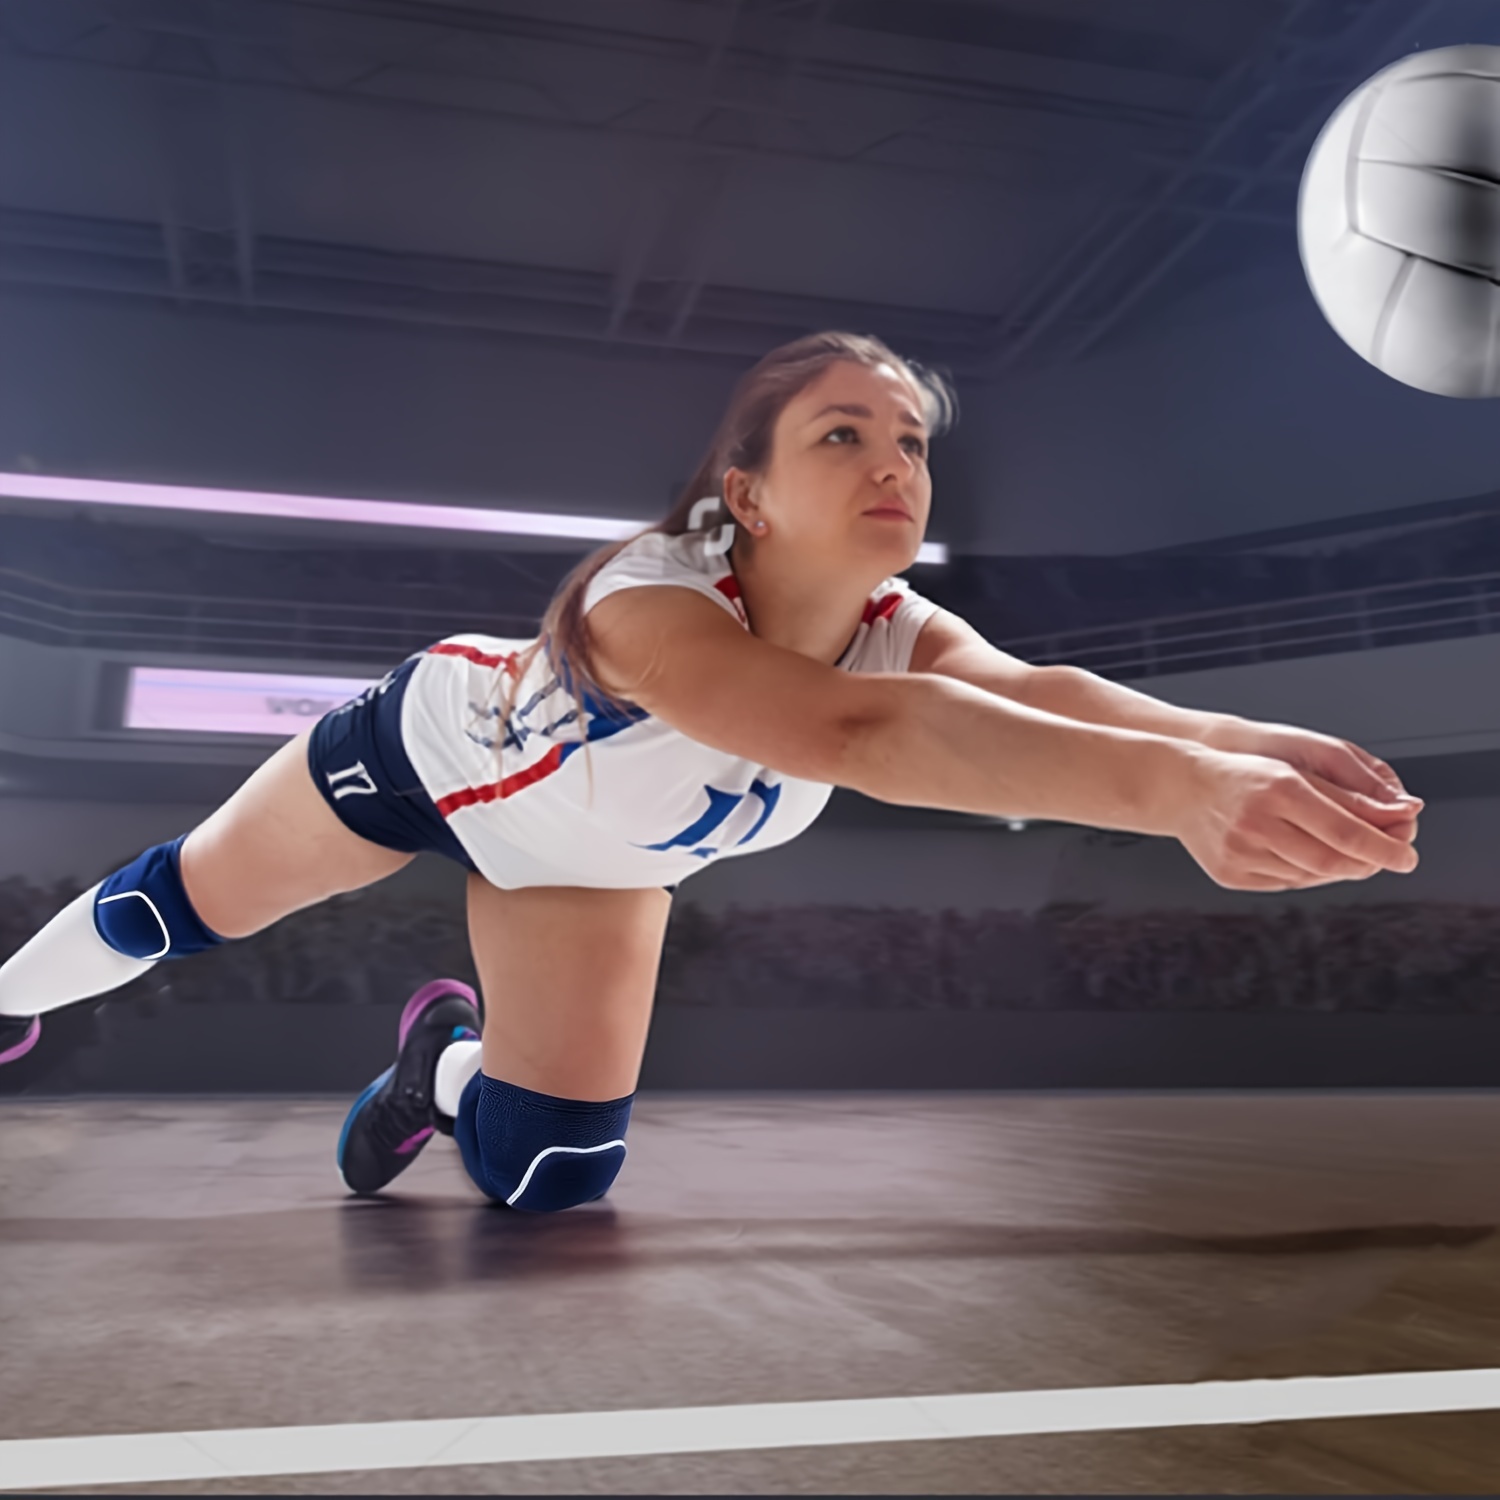 Rodillera de voleibol para mujeres y hombres, antideslizante y gruesa,  protección deportiva, anticolisión, rodillera elástica y transpirable,  ideal